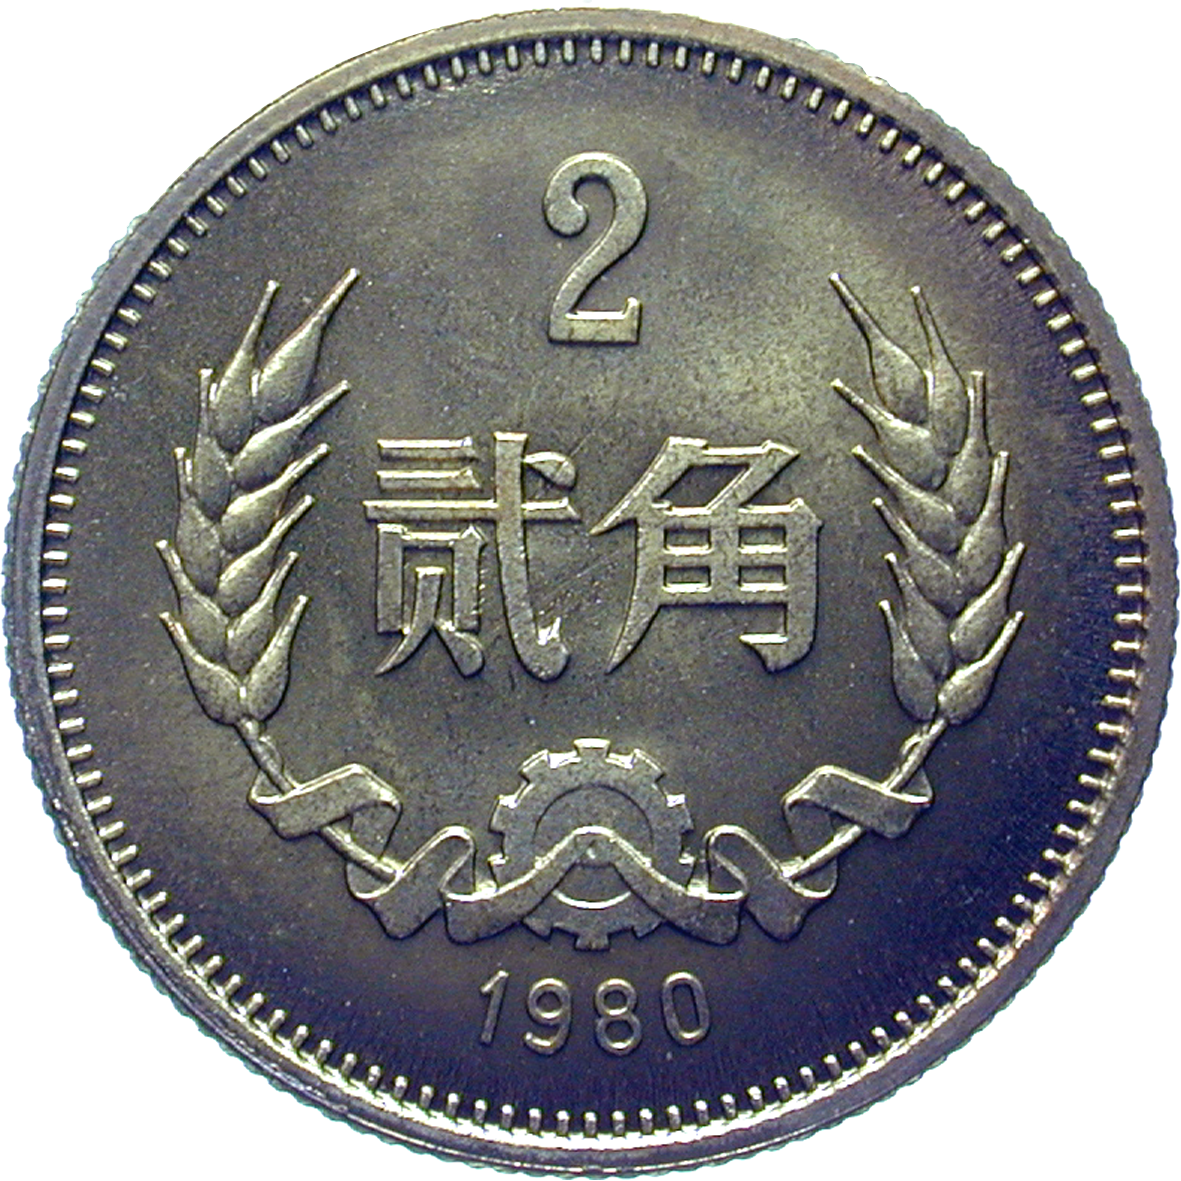 People's Republic of China, 2 Jiao 1980 (reverse)